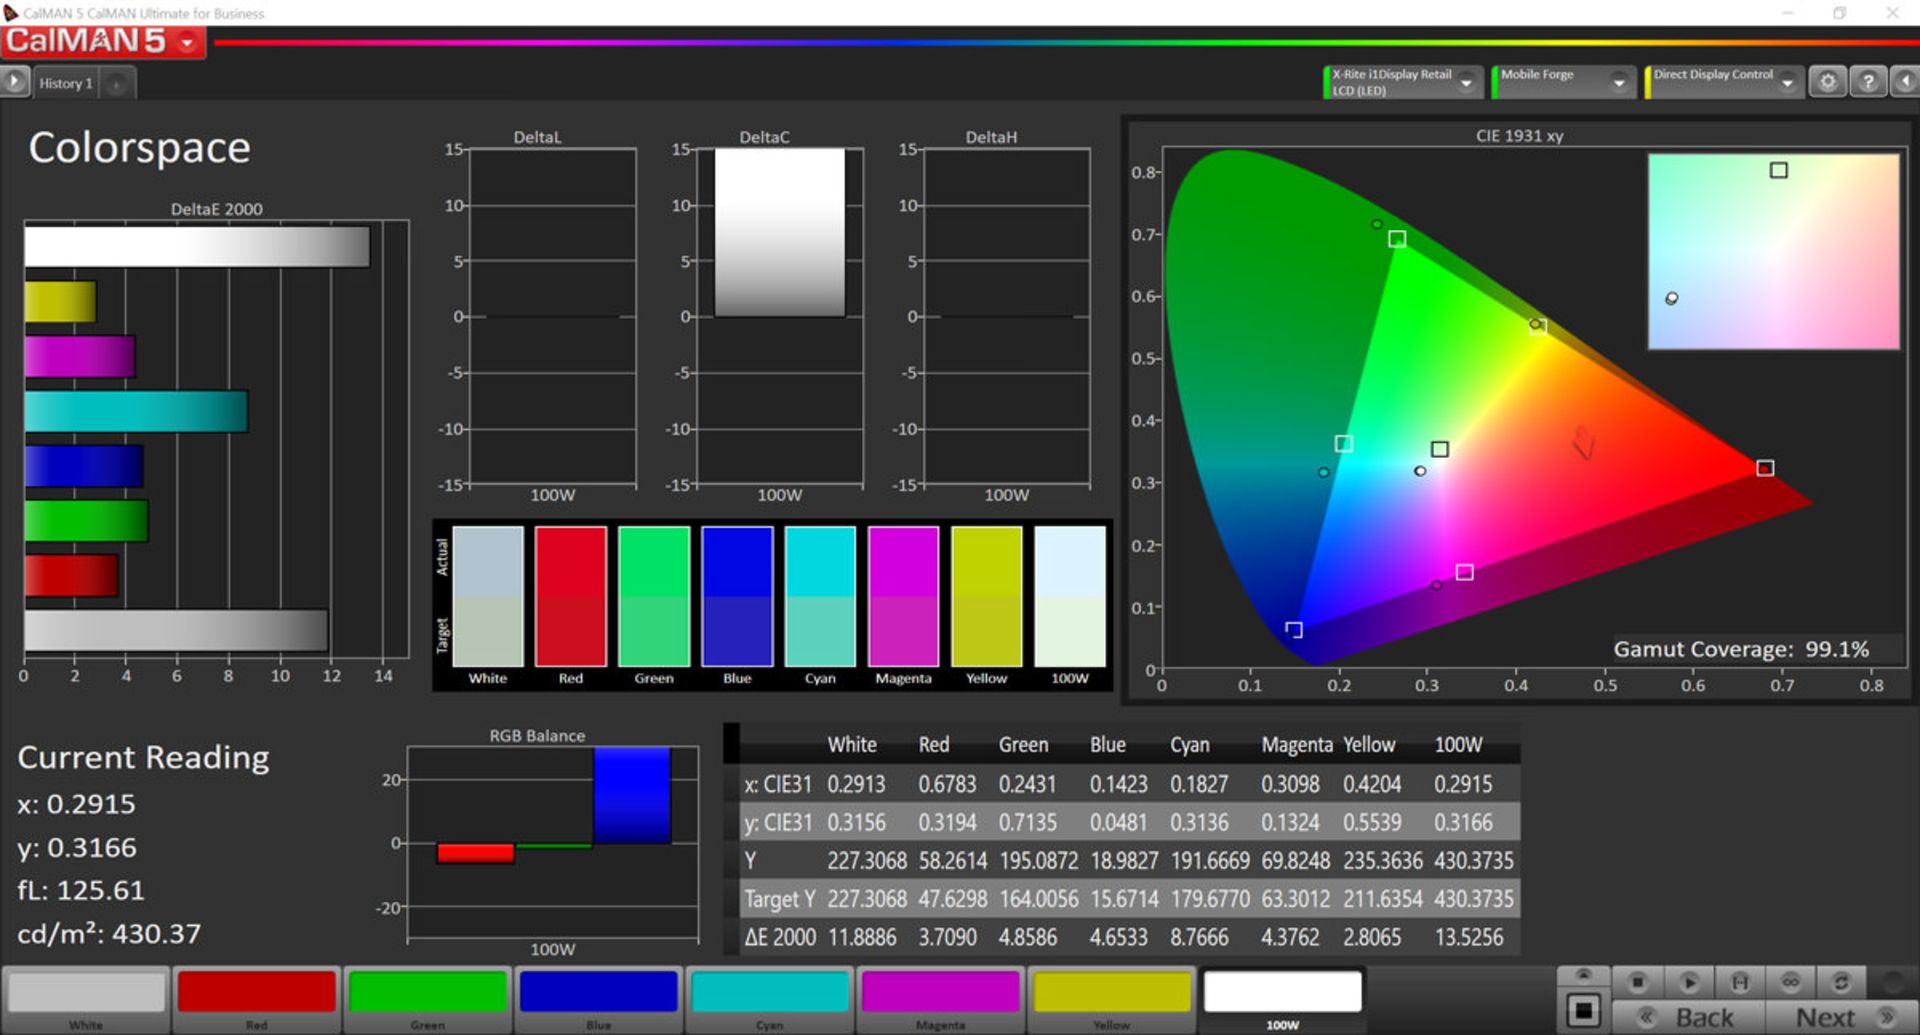 پوشش رنگی در حالت Automatic Contrast در فضای رنگی DCI-P3 برای گوشی می میکس ۳